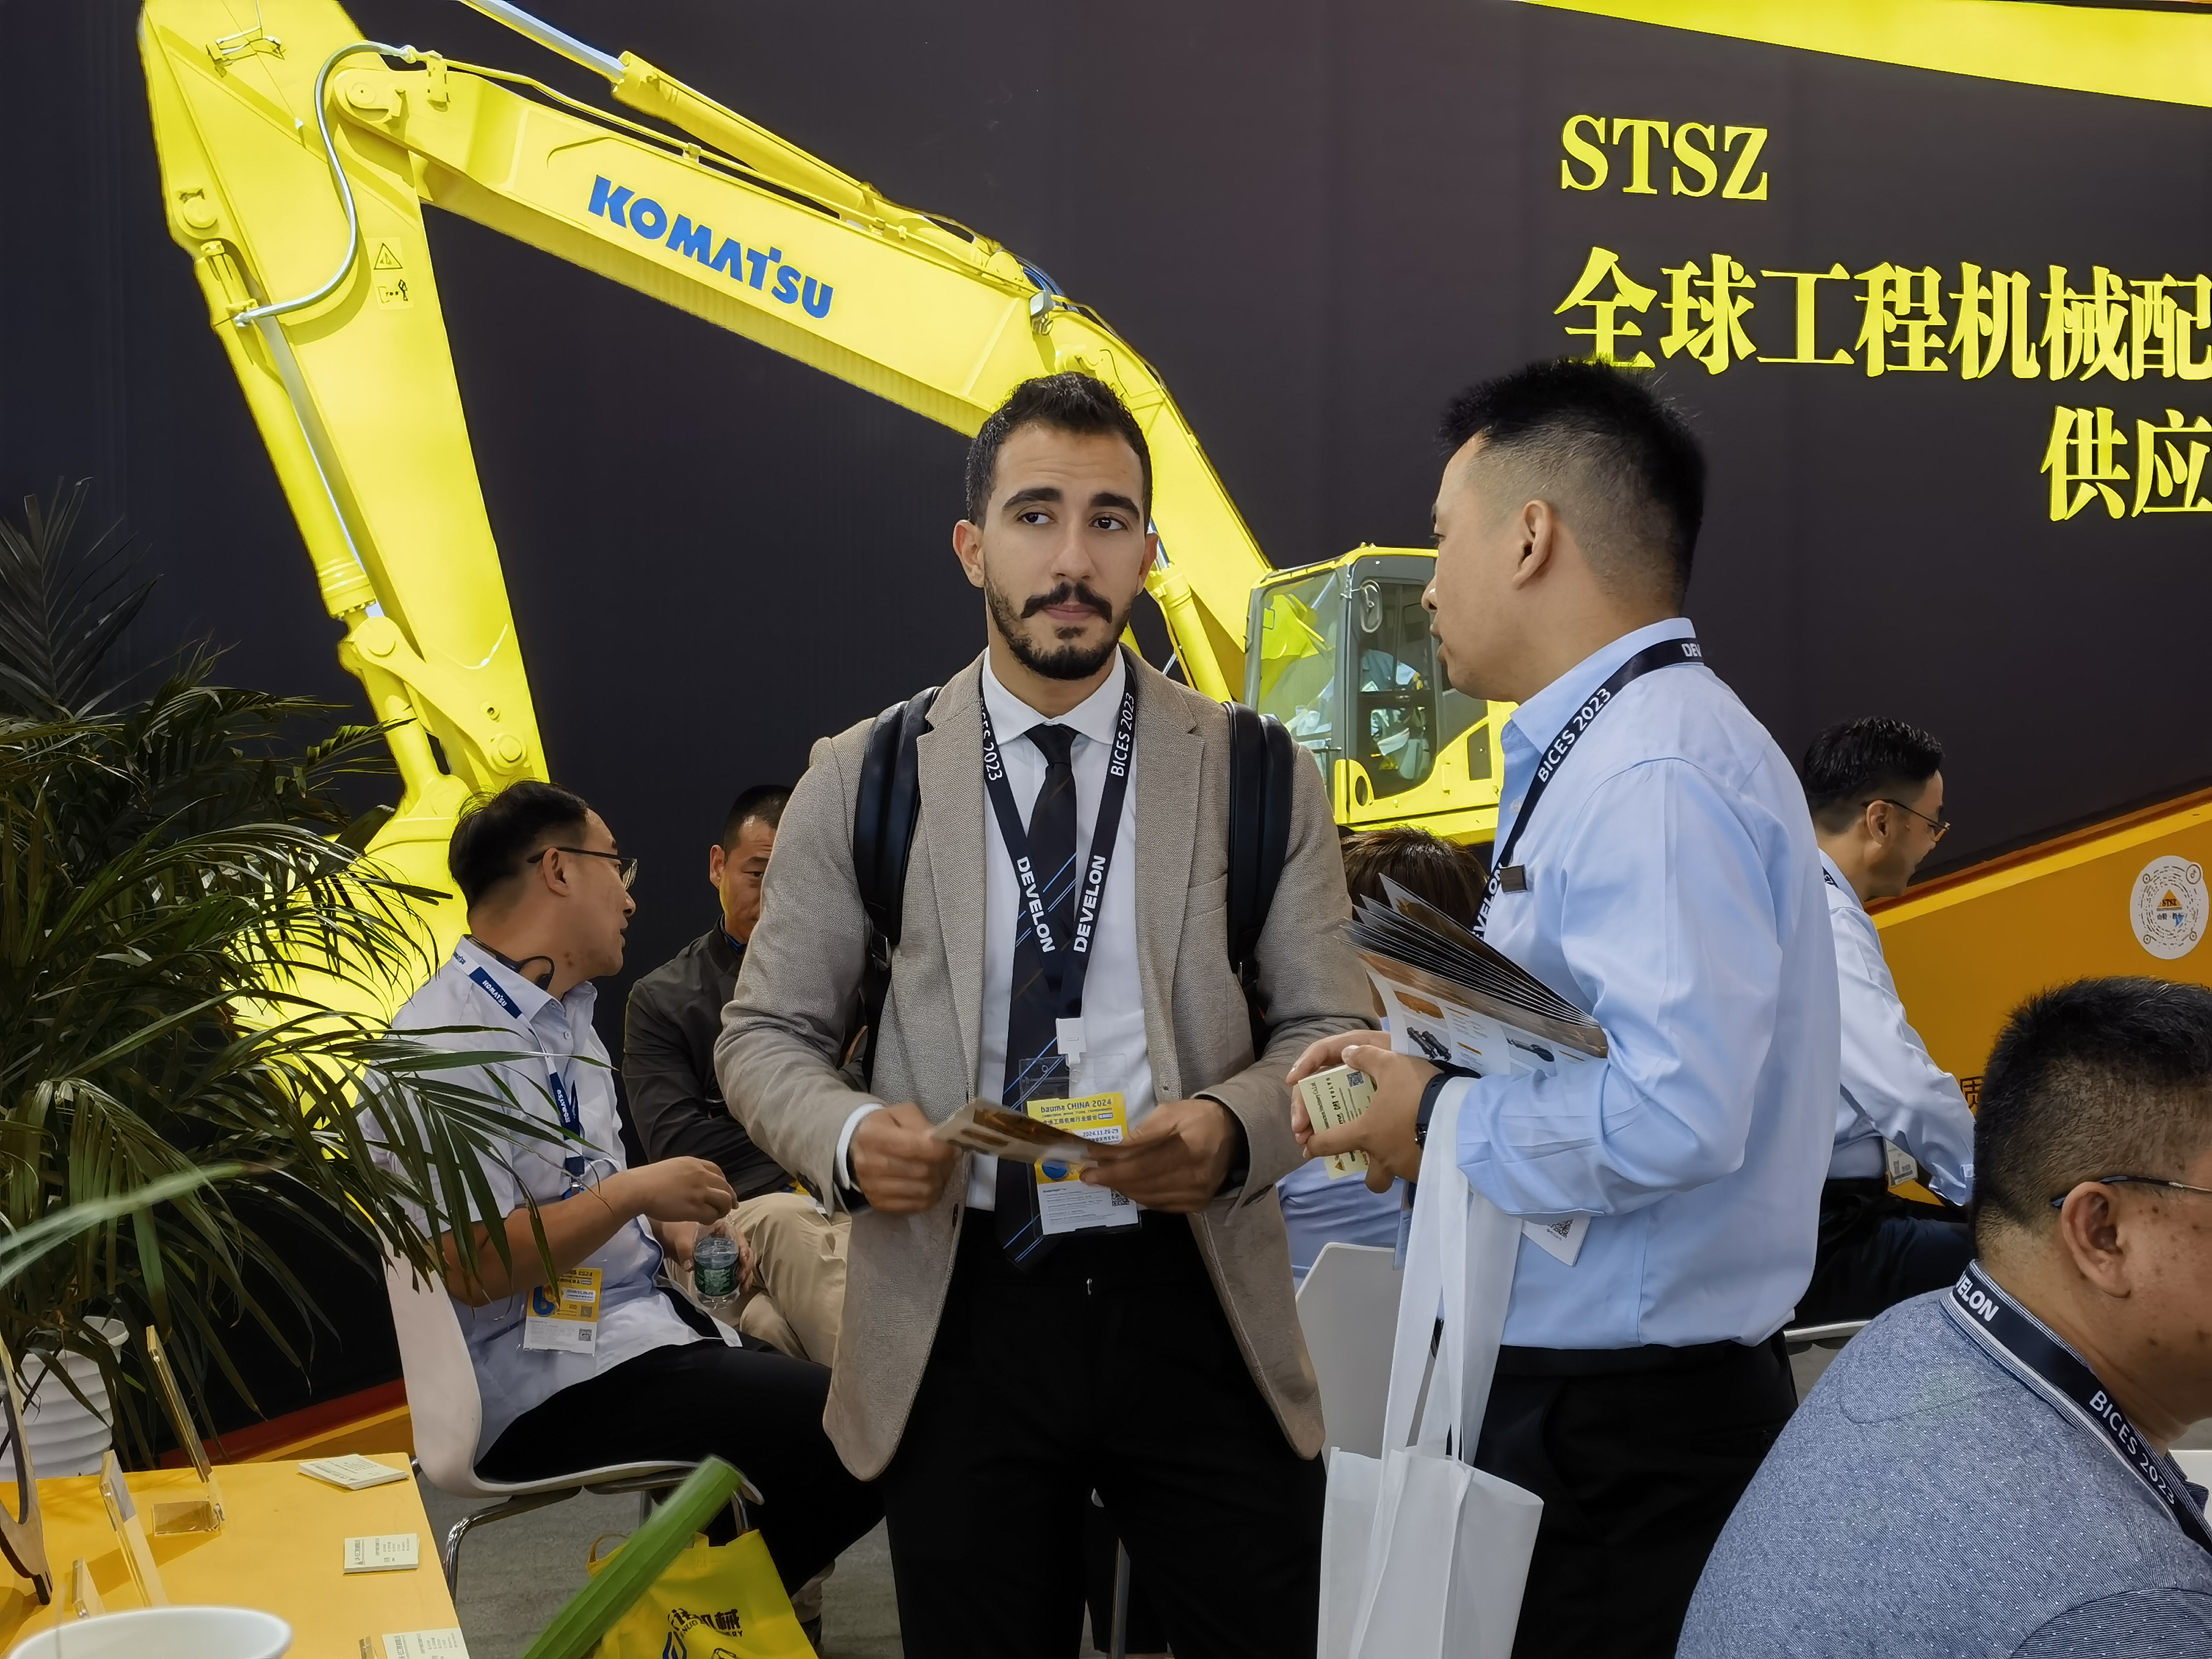 
松正亮相BICES 2023 ▏第十六届中国（北京）国际工程机械展